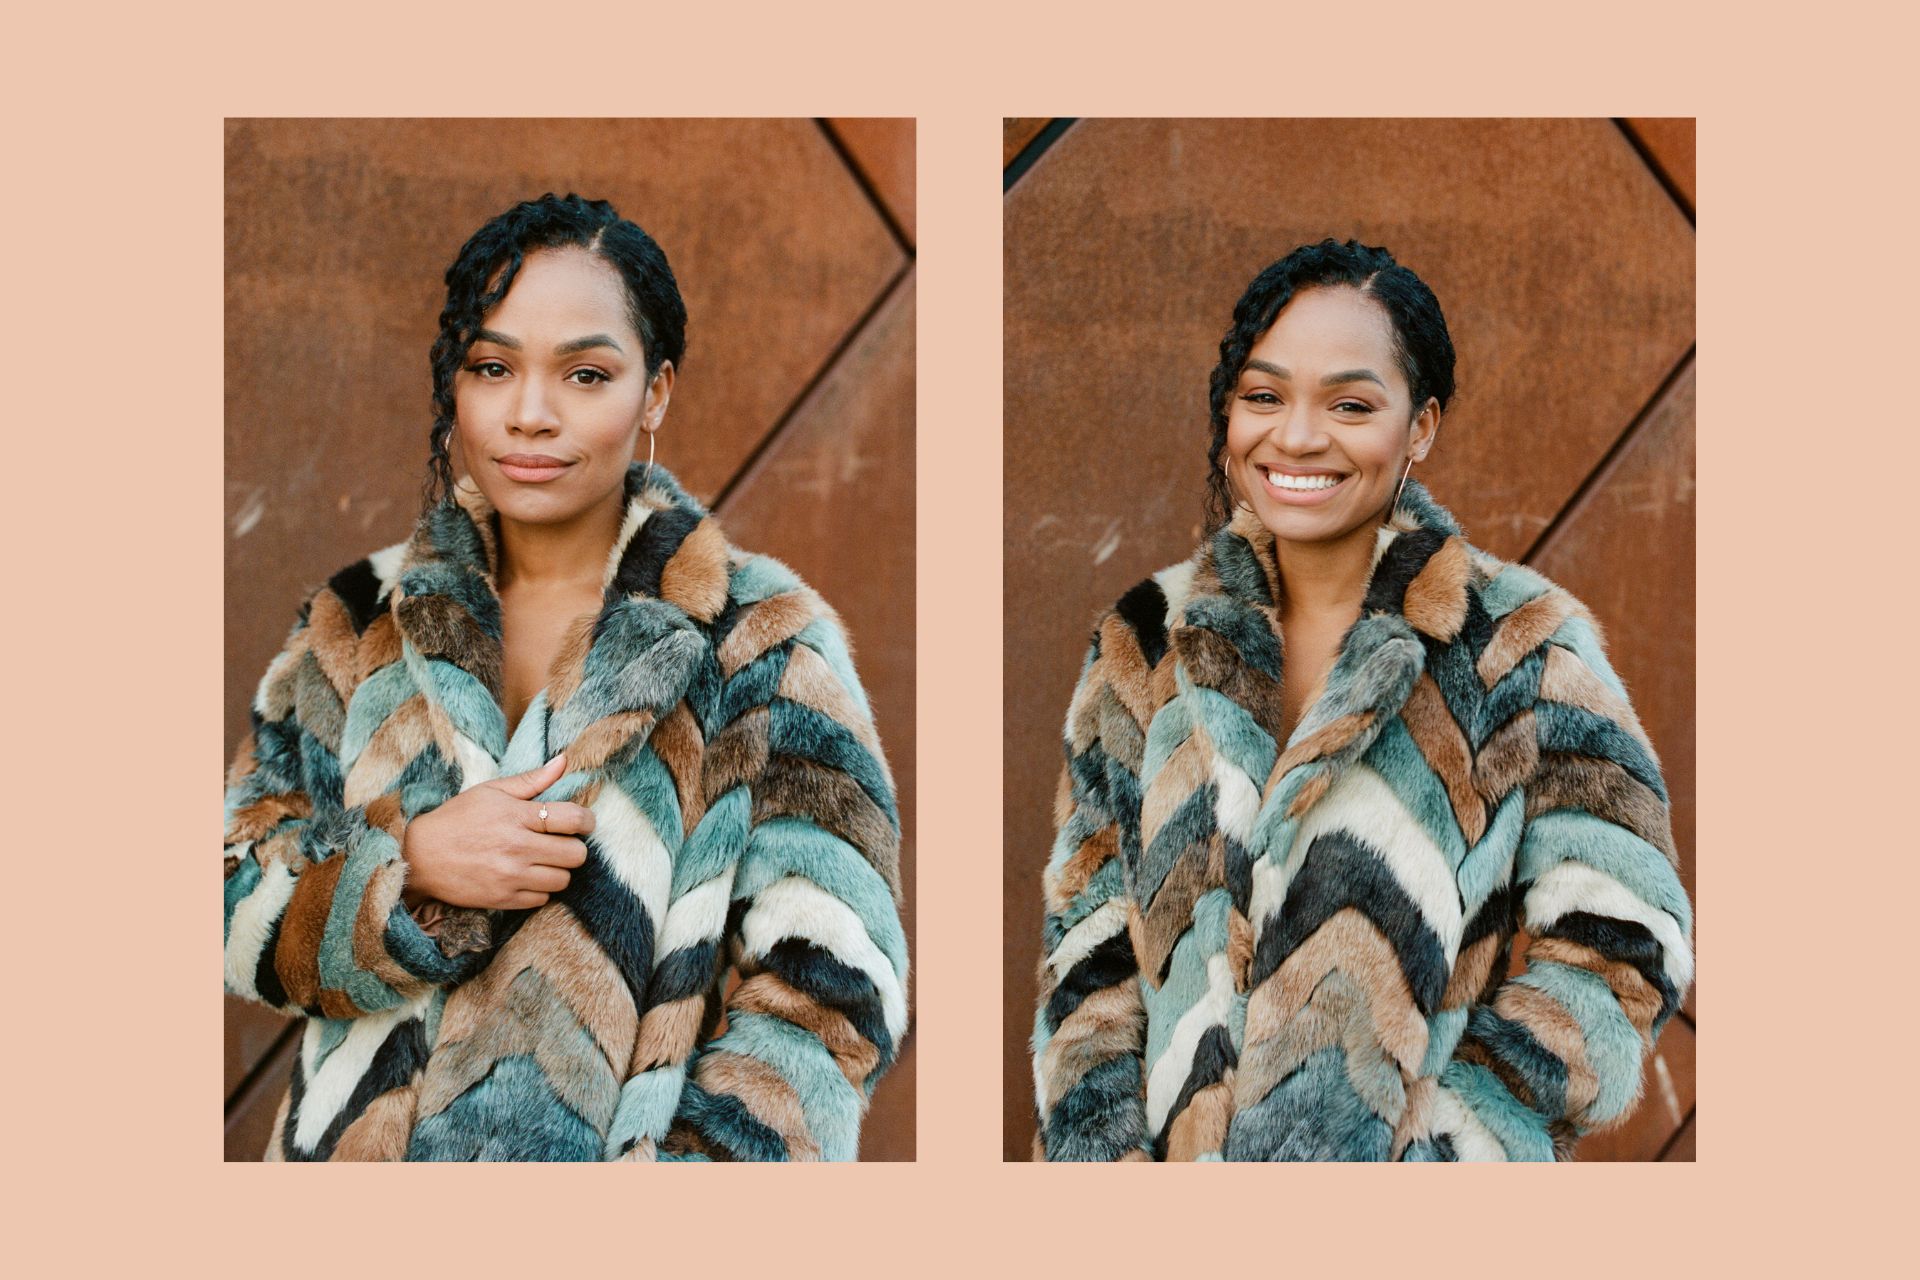 Two images of Tahirah Sharif in a fur coat